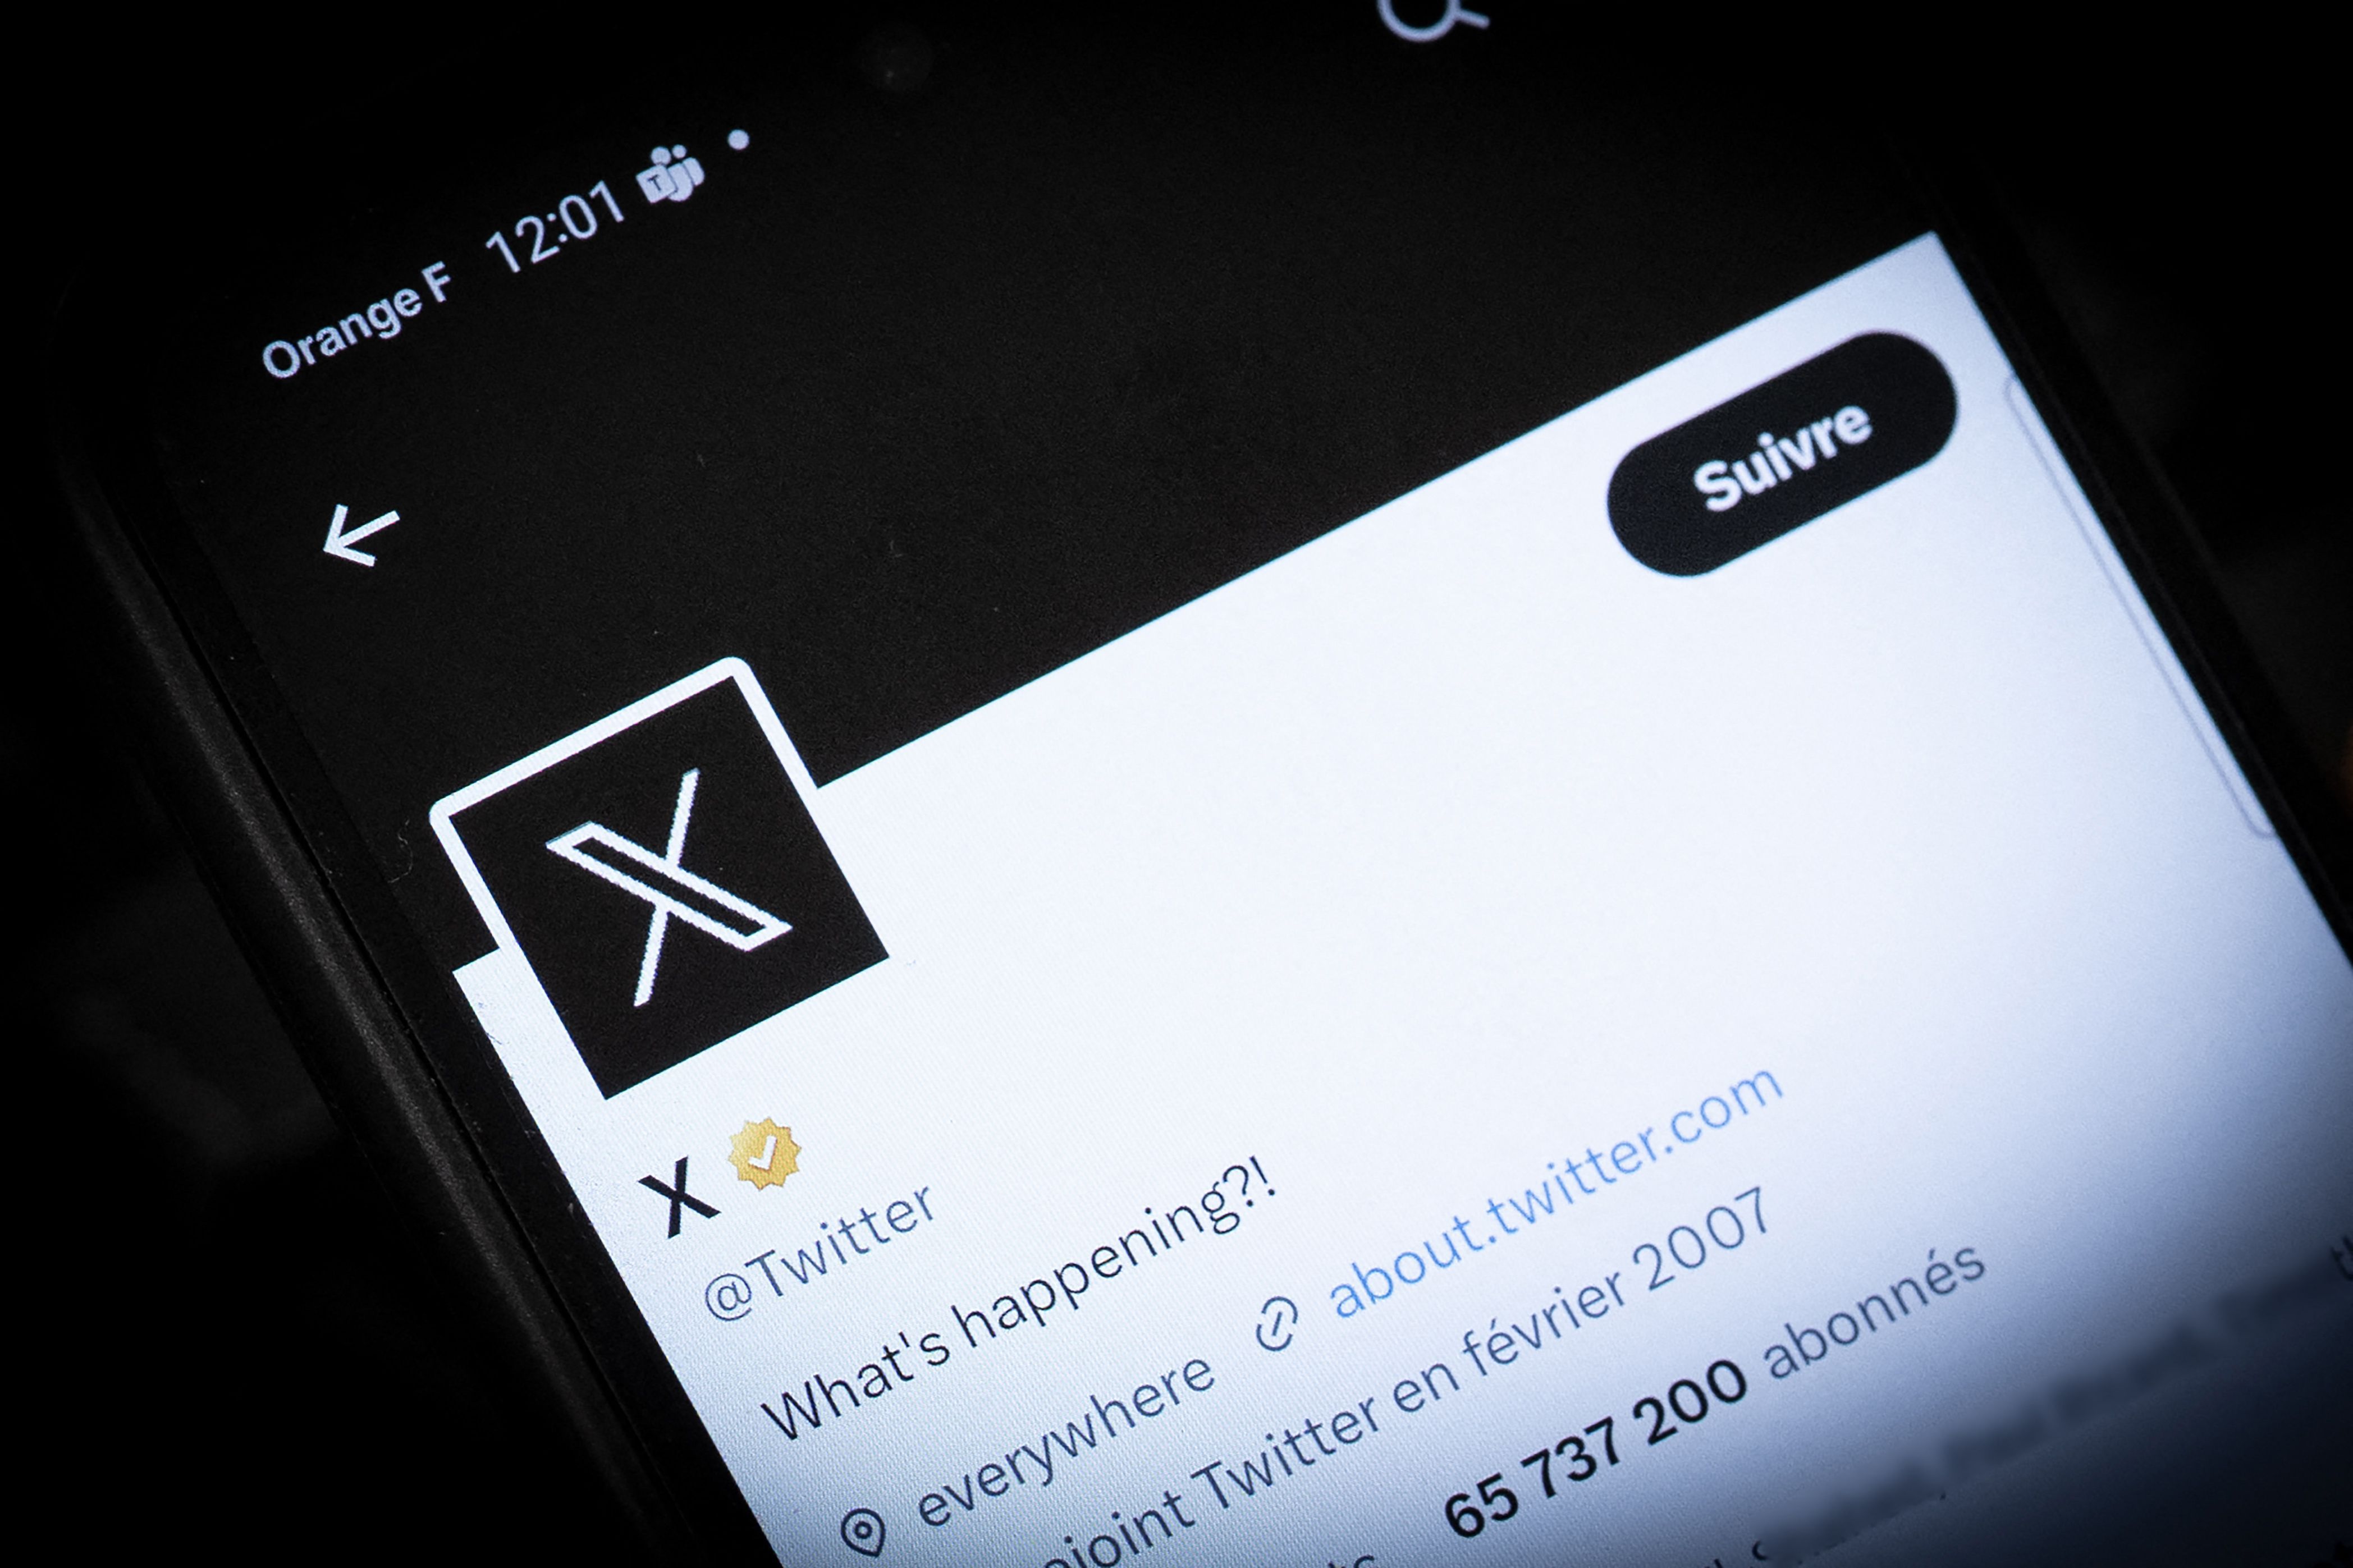 La plataforma social 'X' enfrenta críticas tras un estudio que la ubica como la principal fuente de desinformación en Europa, luego de su cambio de nombre y salida del código contra la desinformación.